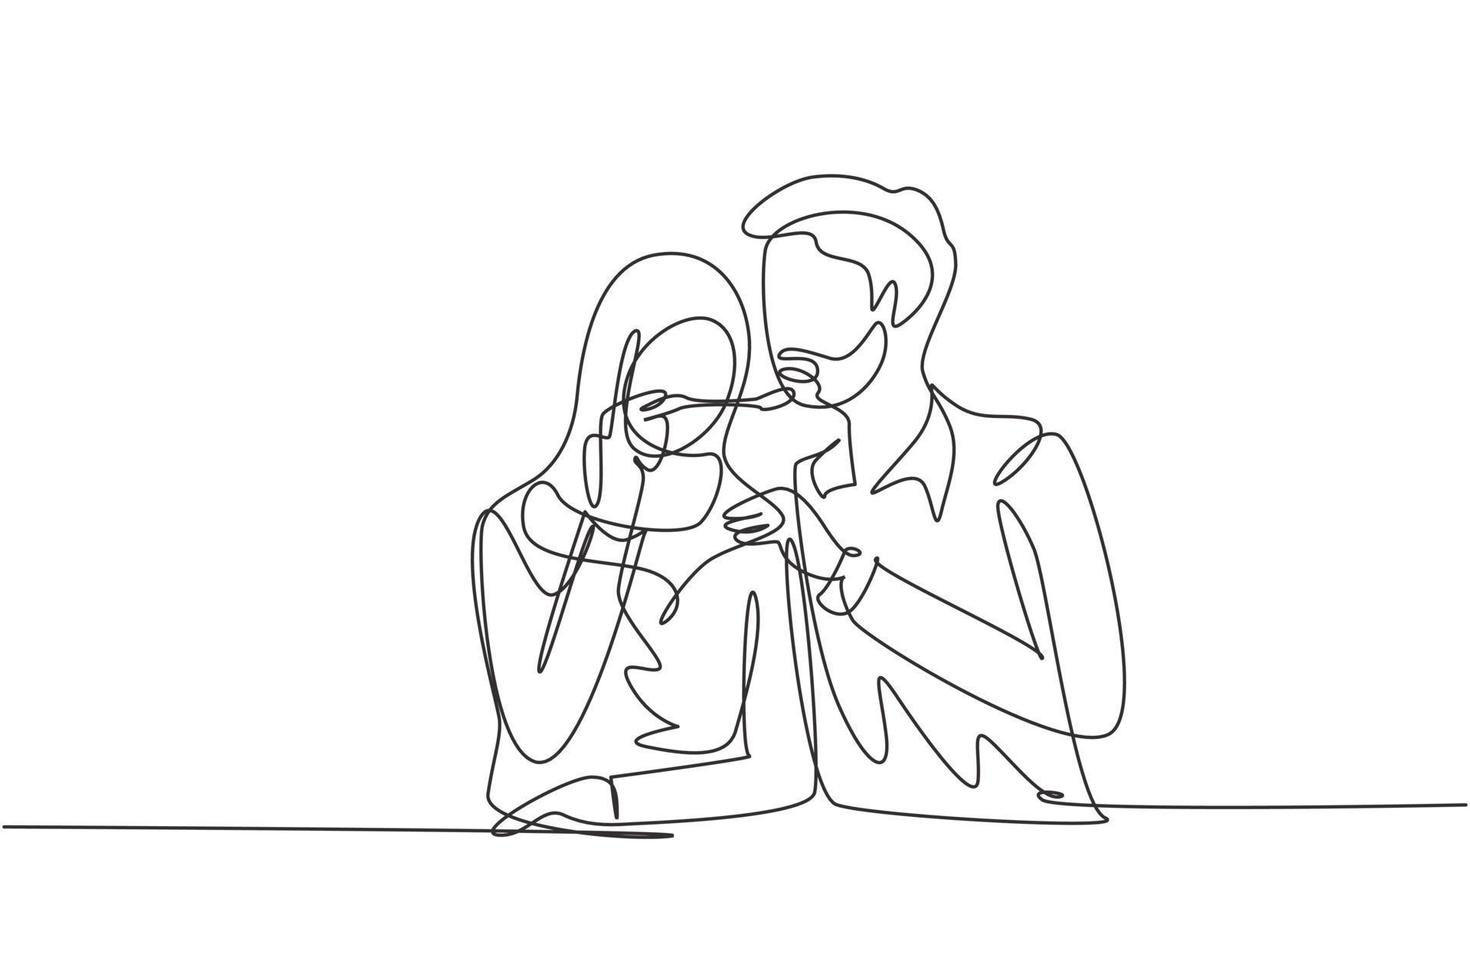 único desenho de linha romântico feminino árabe alimenta o marido. casal feliz jantar juntos no restaurante. comemorar aniversários de casamento. linha contínua desenhar design gráfico ilustração vetorial vetor